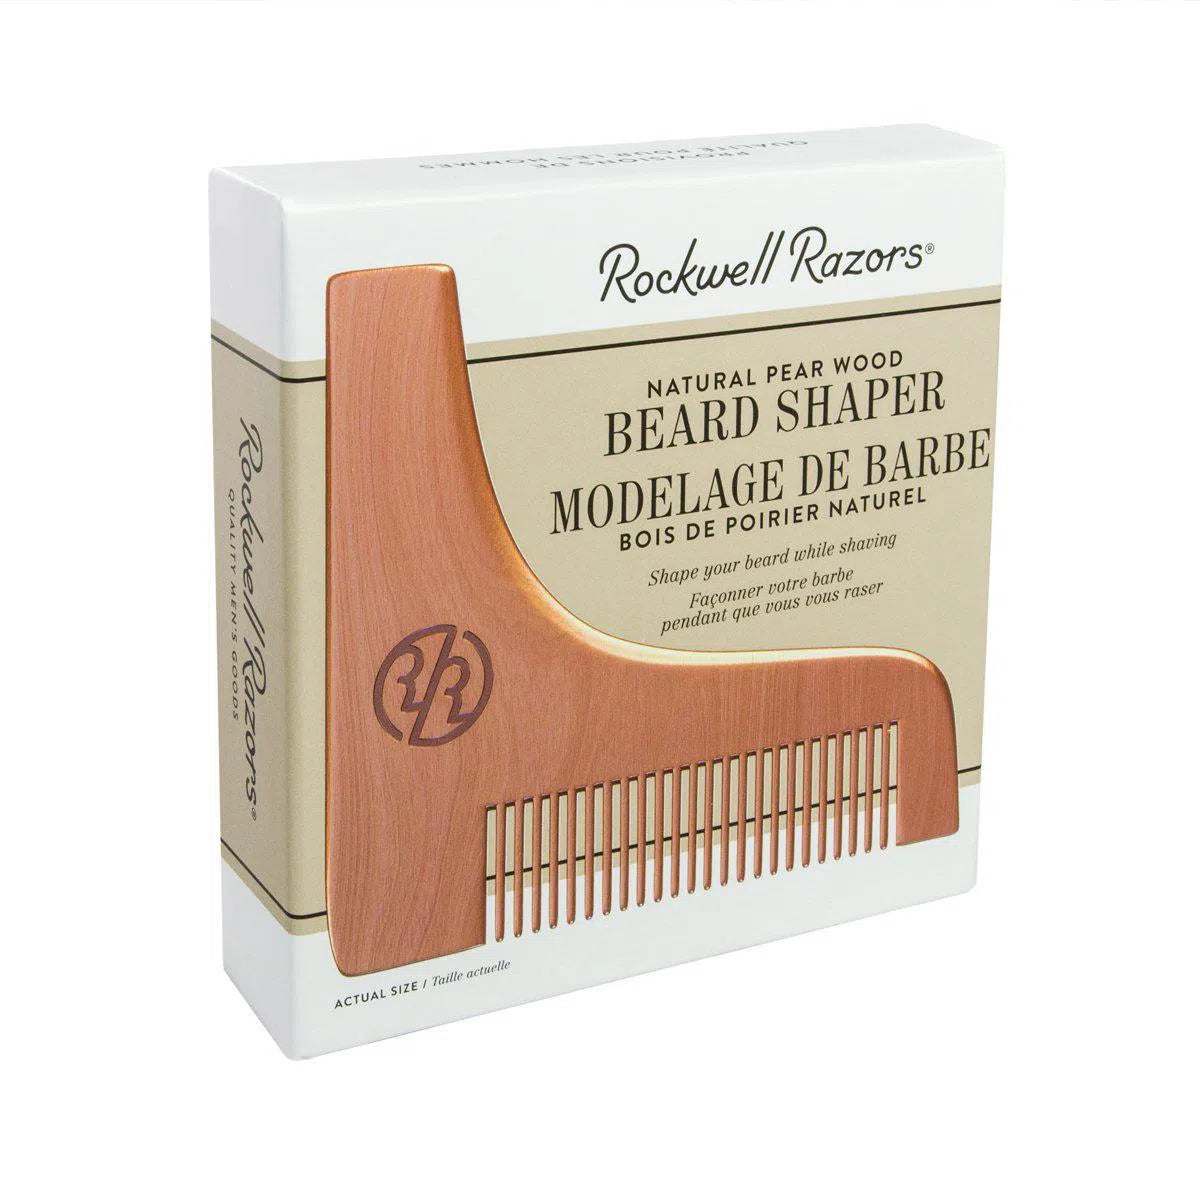 Natural Pear Wood Beard Shaper